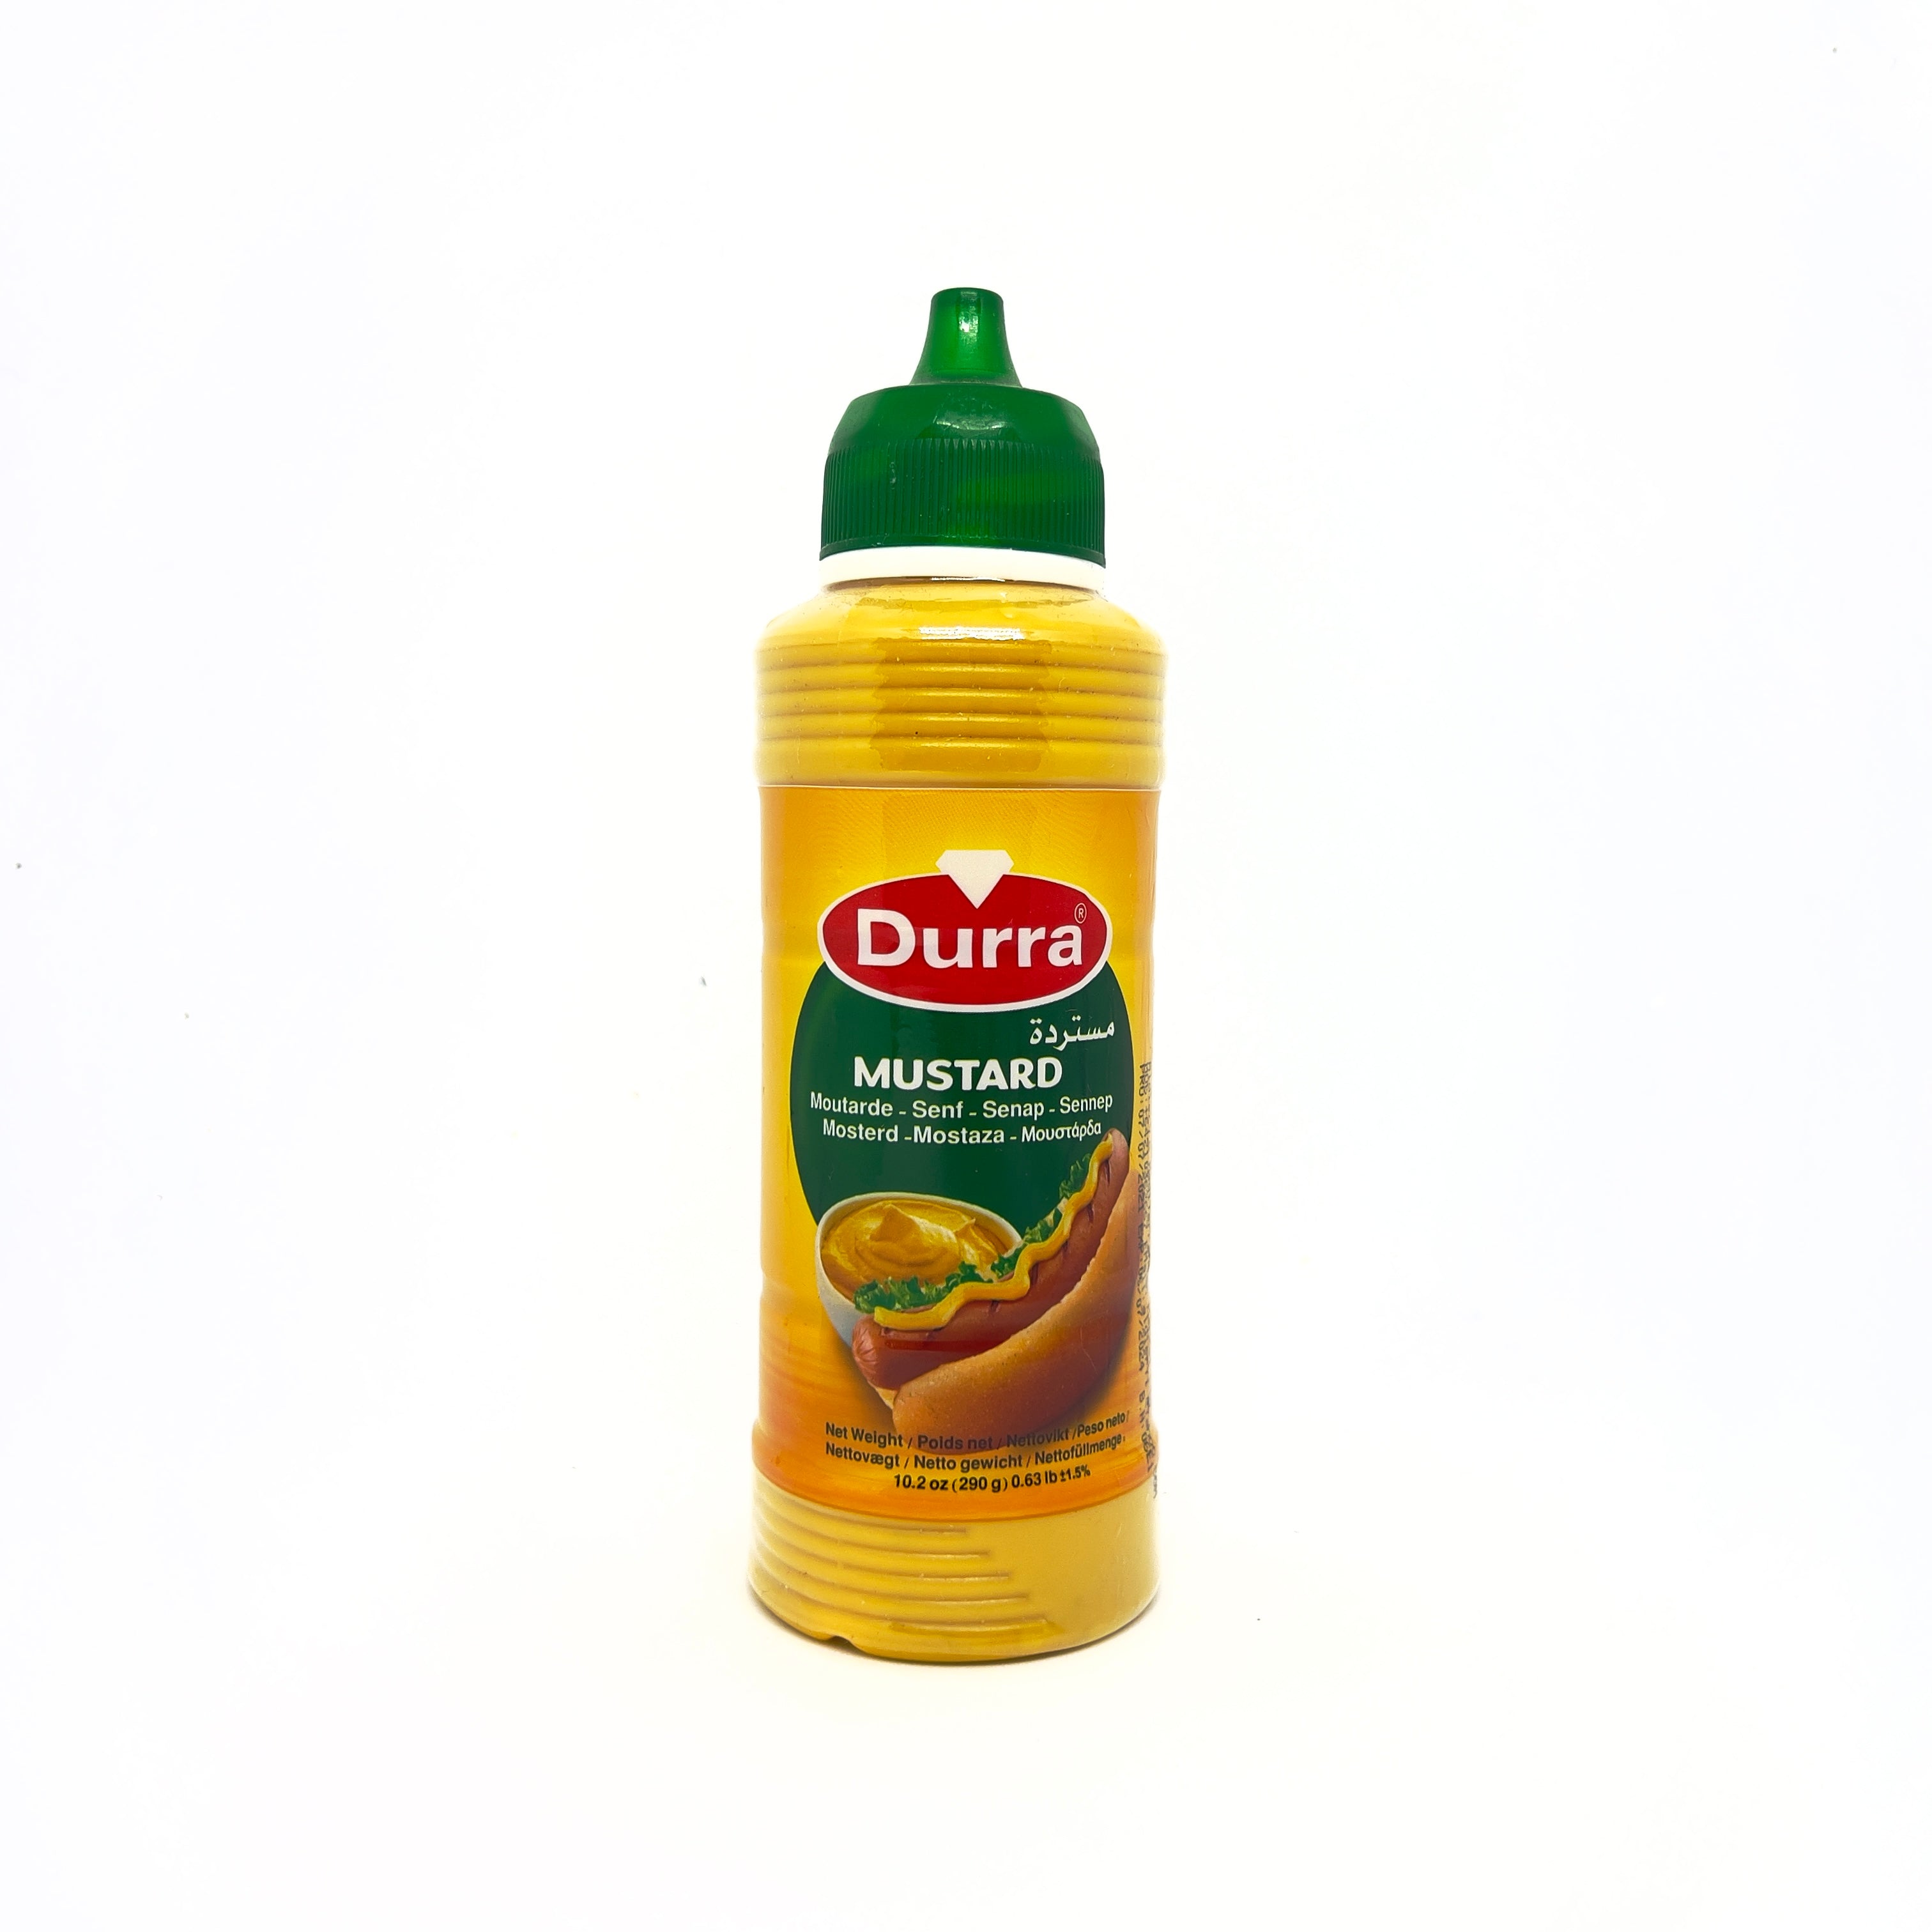 DURRA Mustard 290g